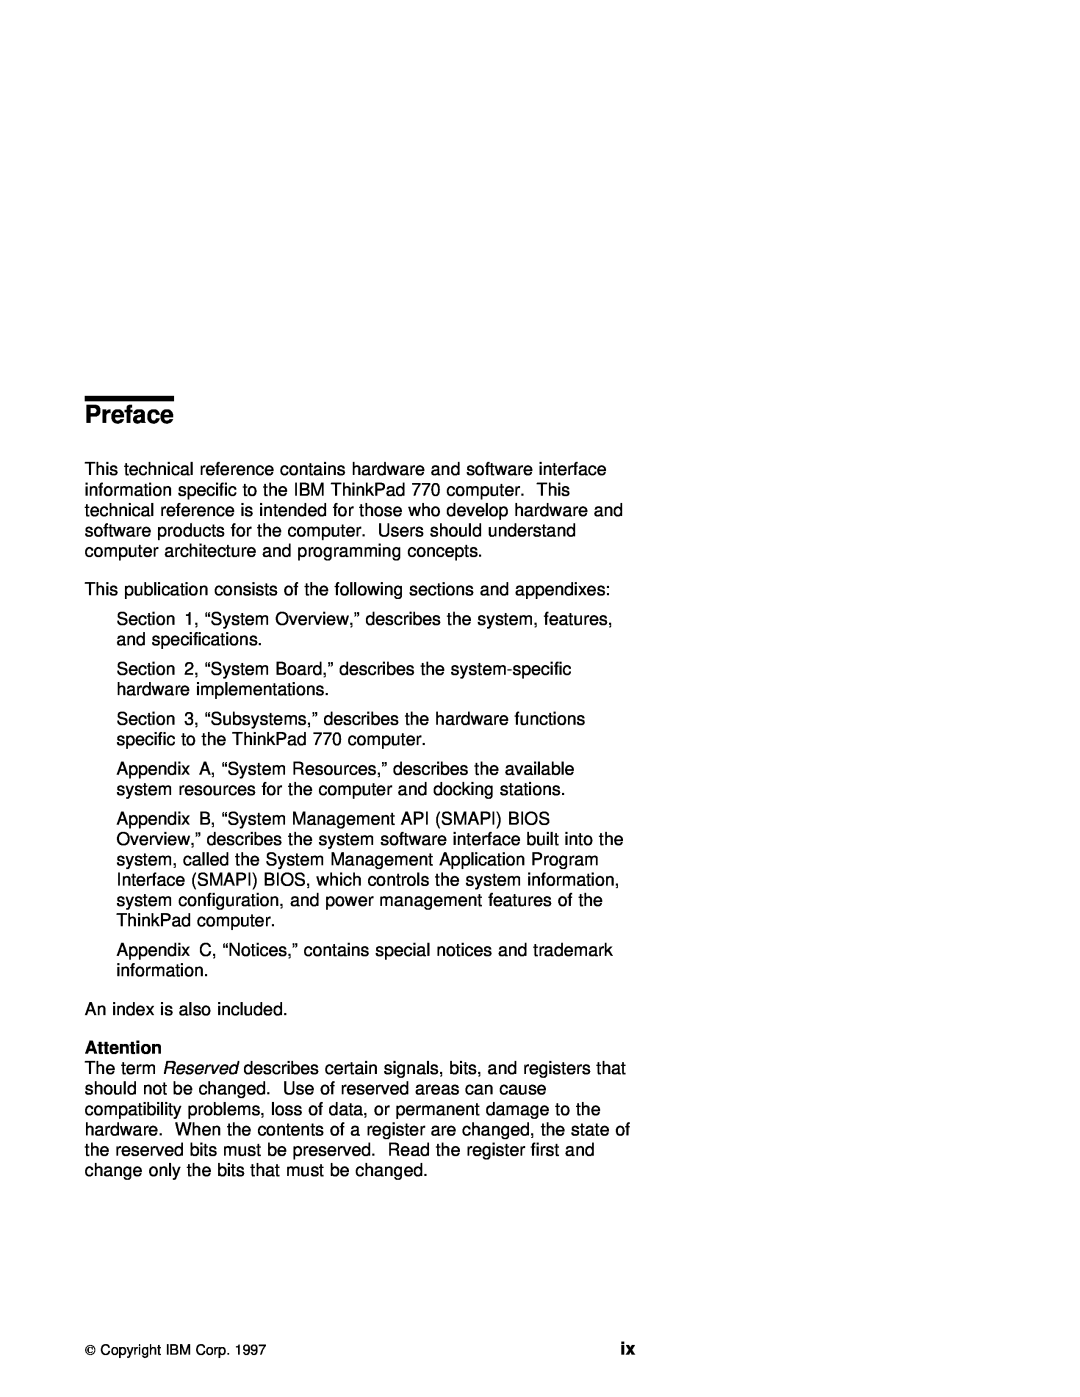 IBM 770 manual Preface 